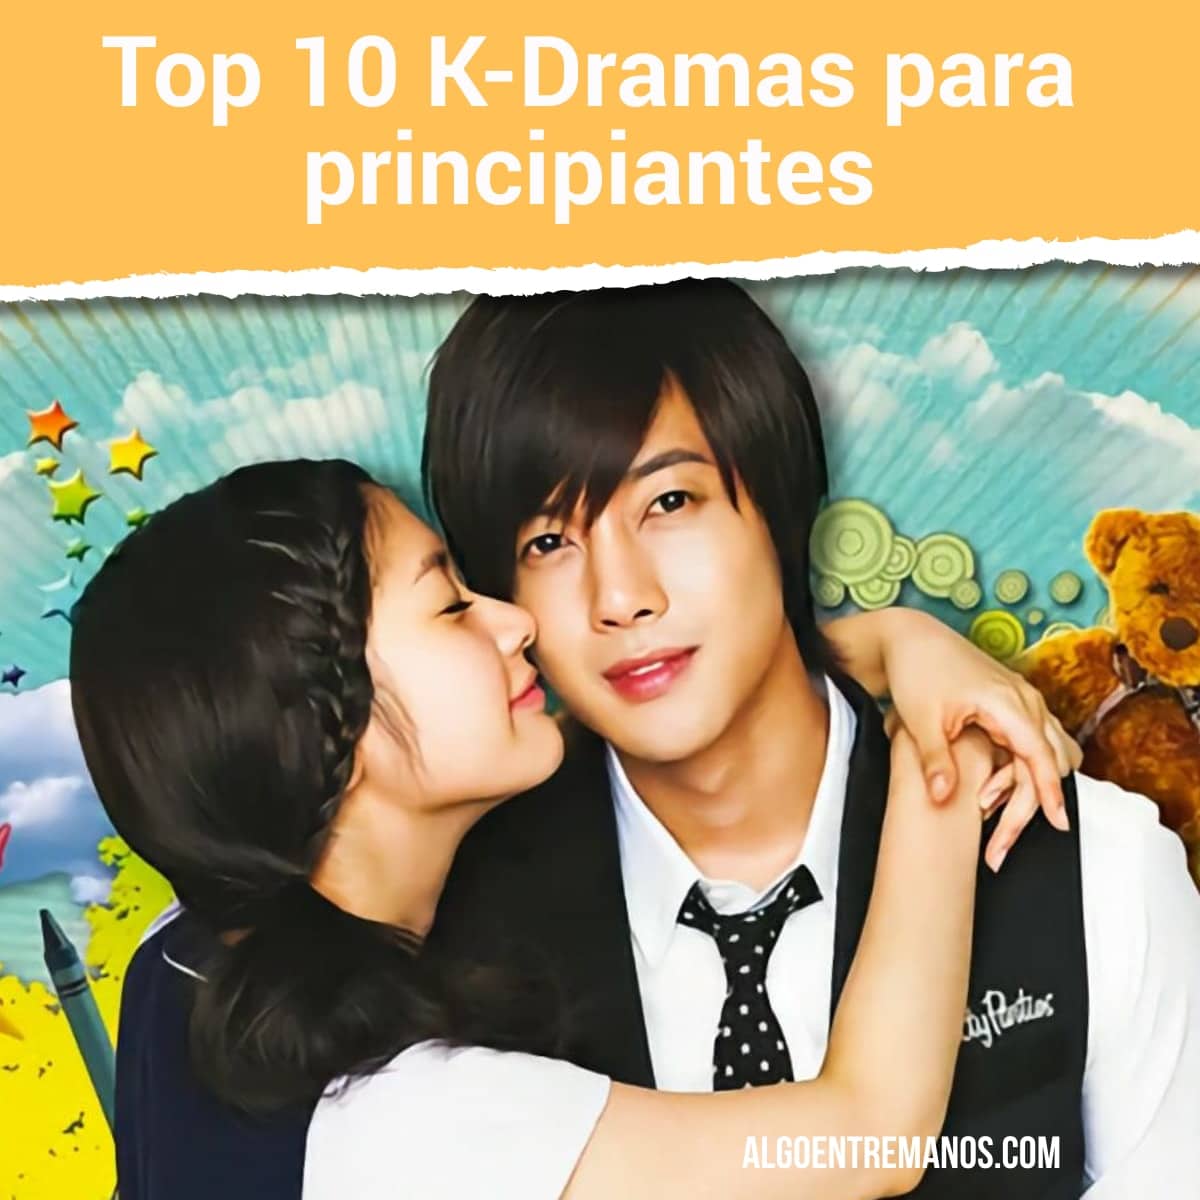 Top 10 K-Dramas para principiantes